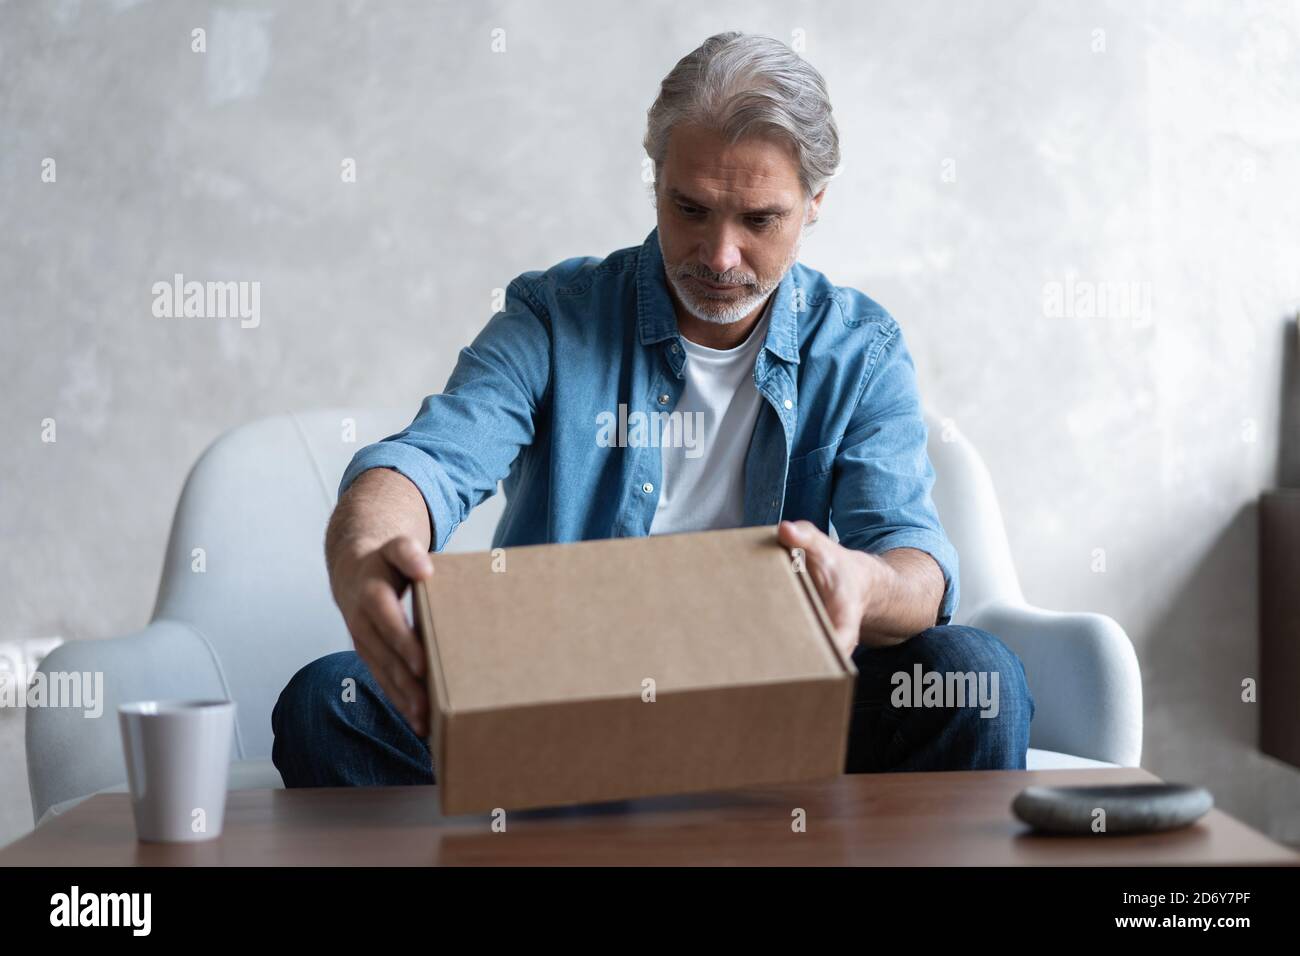 Sourire homme consommateur ouvrir boîte carton obtenir colis postal, client mâle recevoir paquet de carton s'asseoir sur le canapé à la maison Banque D'Images